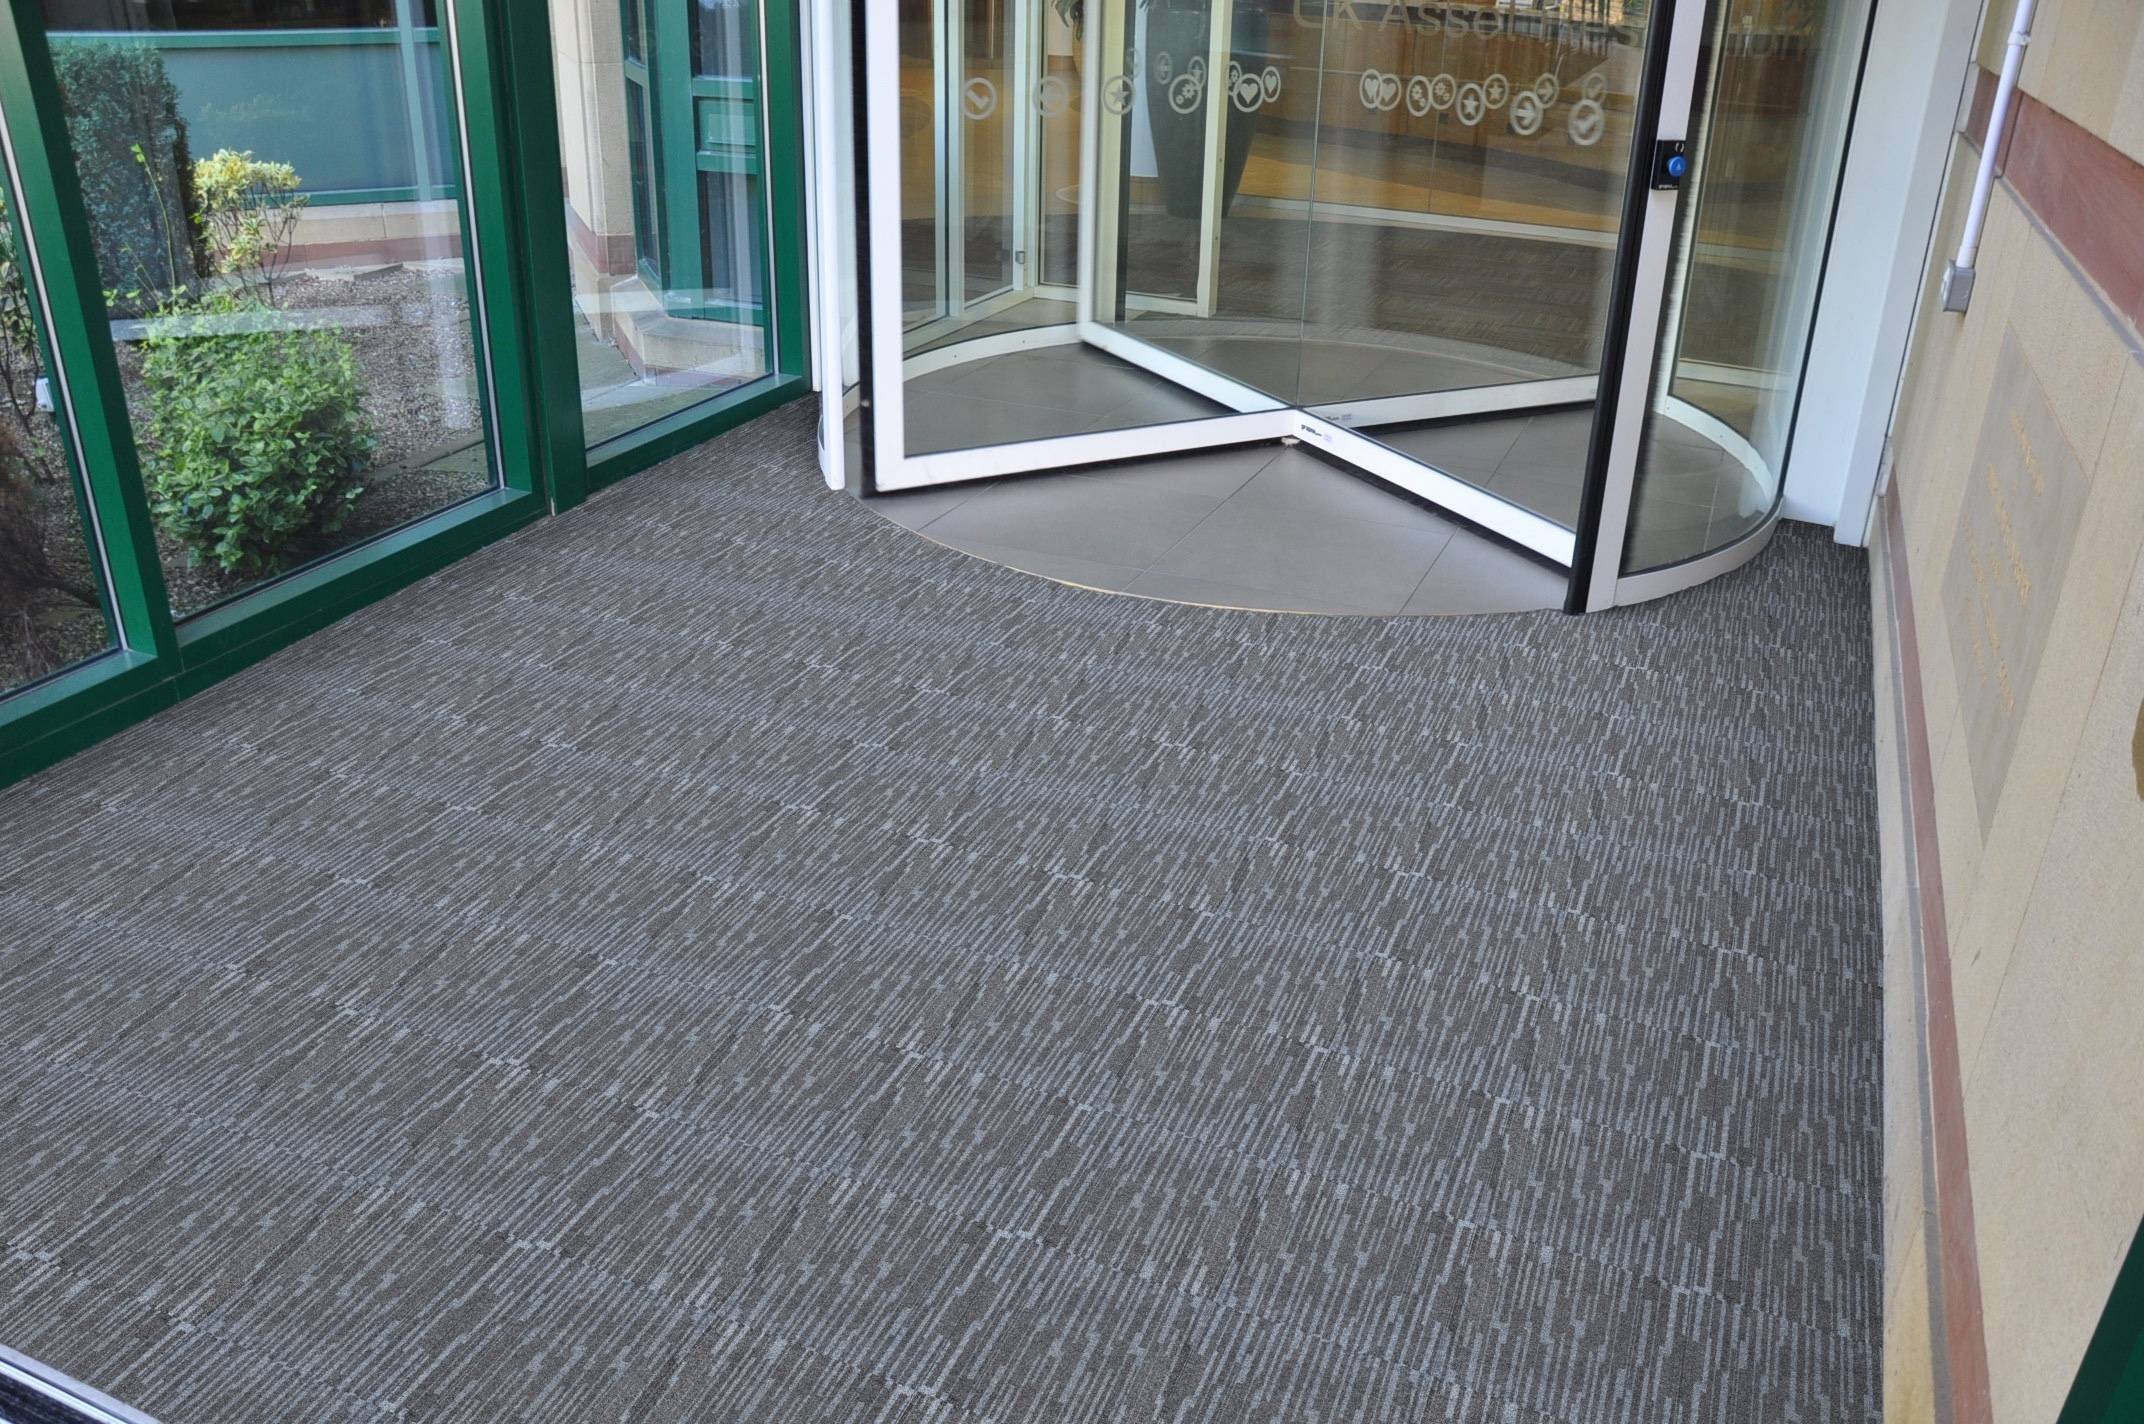 Paragon Workspace Entrance Design Carpet Design 2 Victor